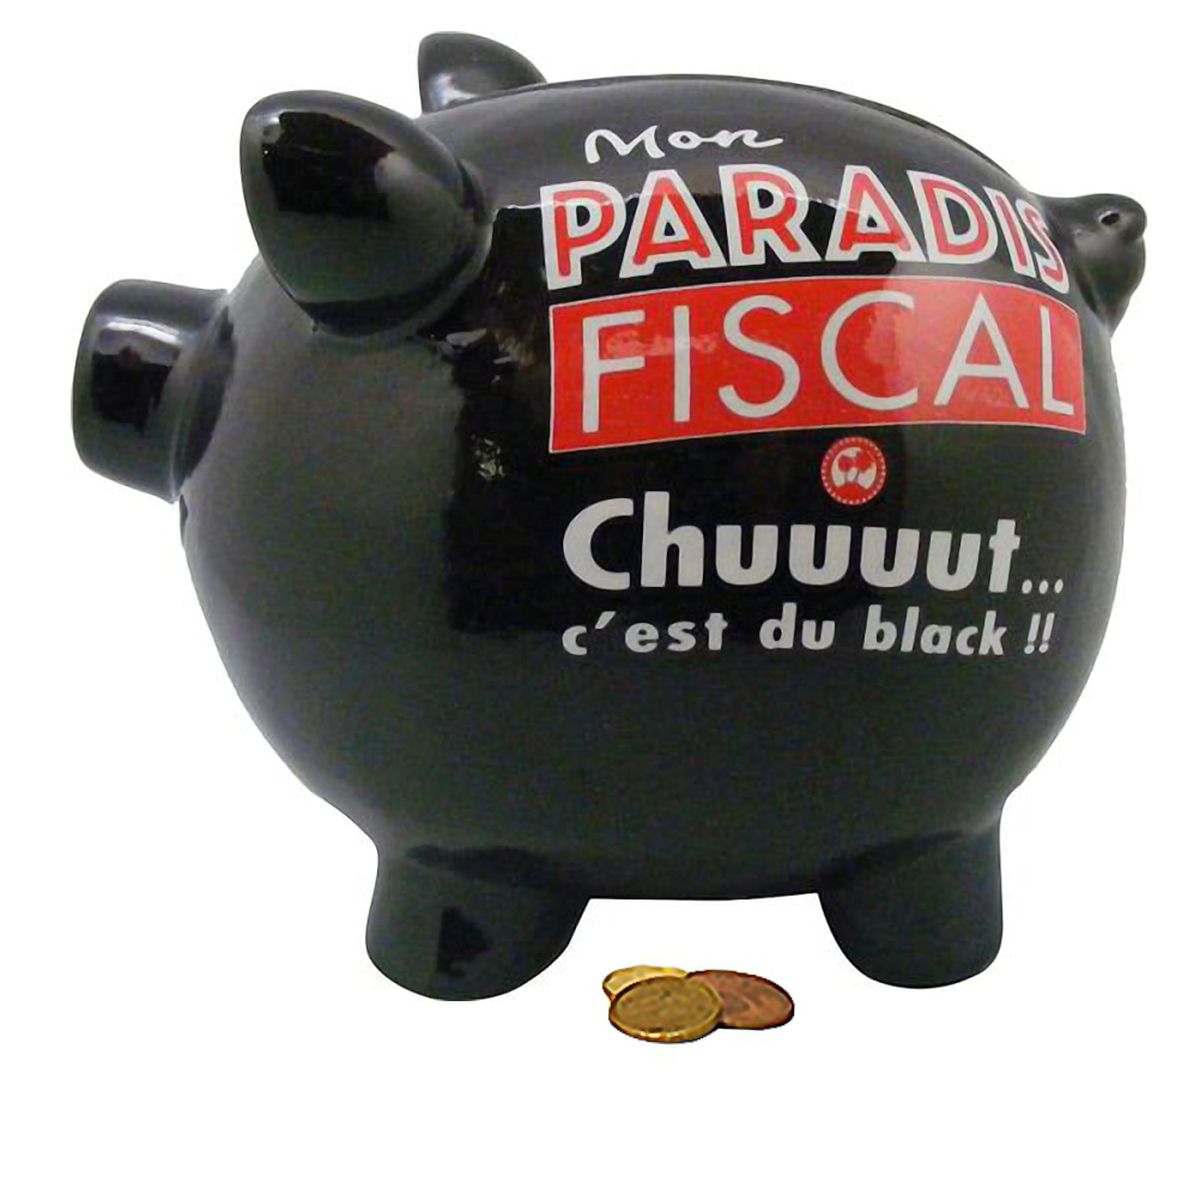 Paradis Fiscal Tirelire Noire Cochon XXL 